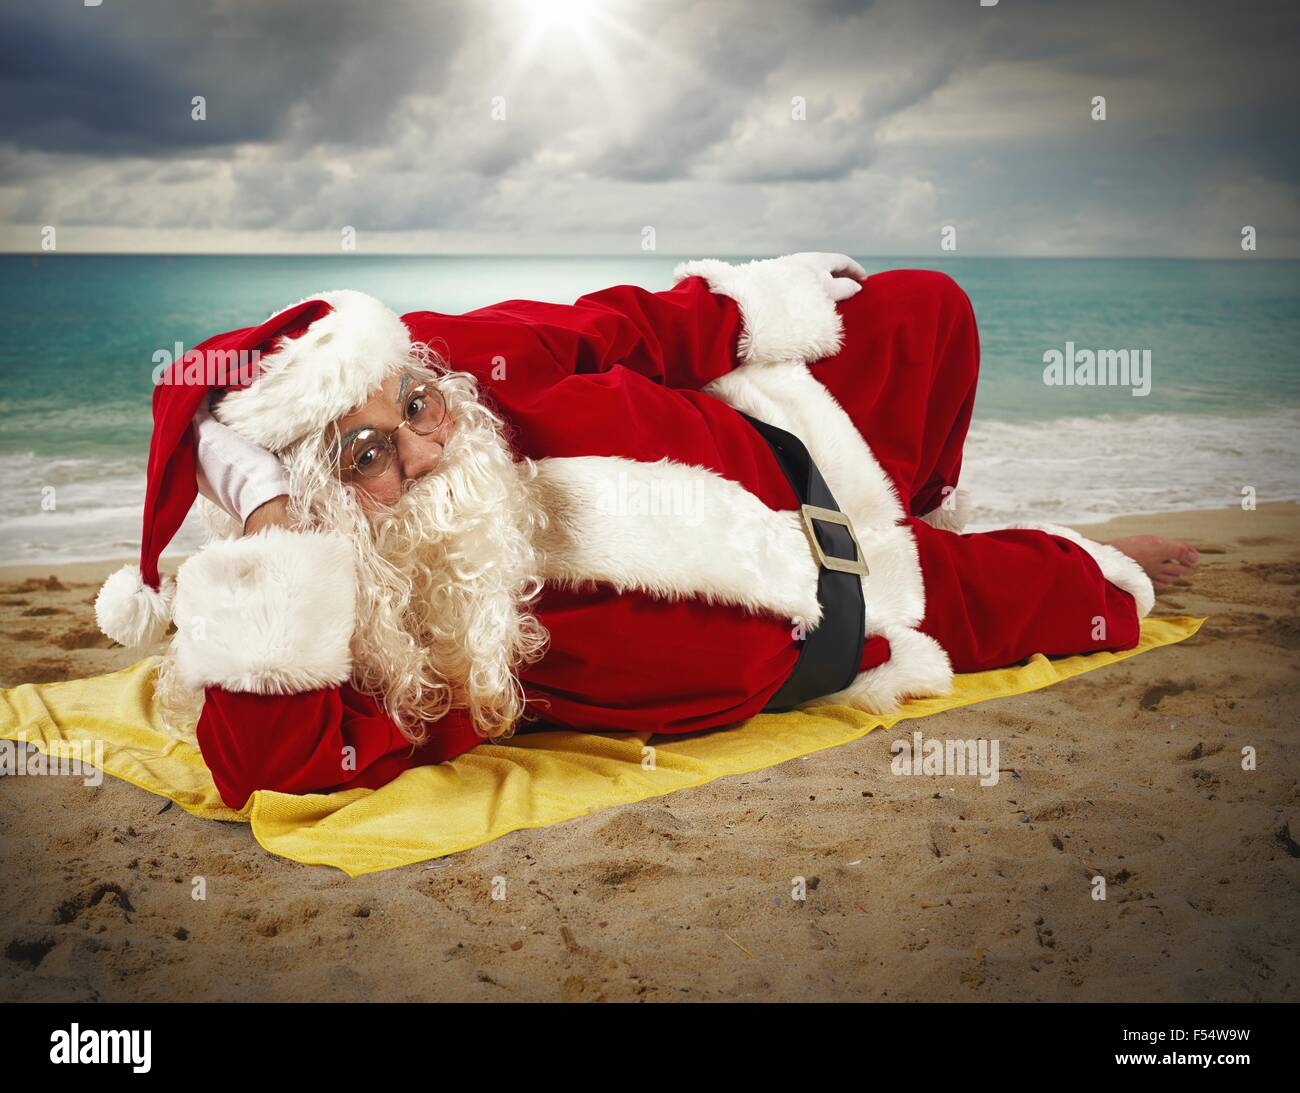 Urlaub am Strand von Santa Claus Stockfoto